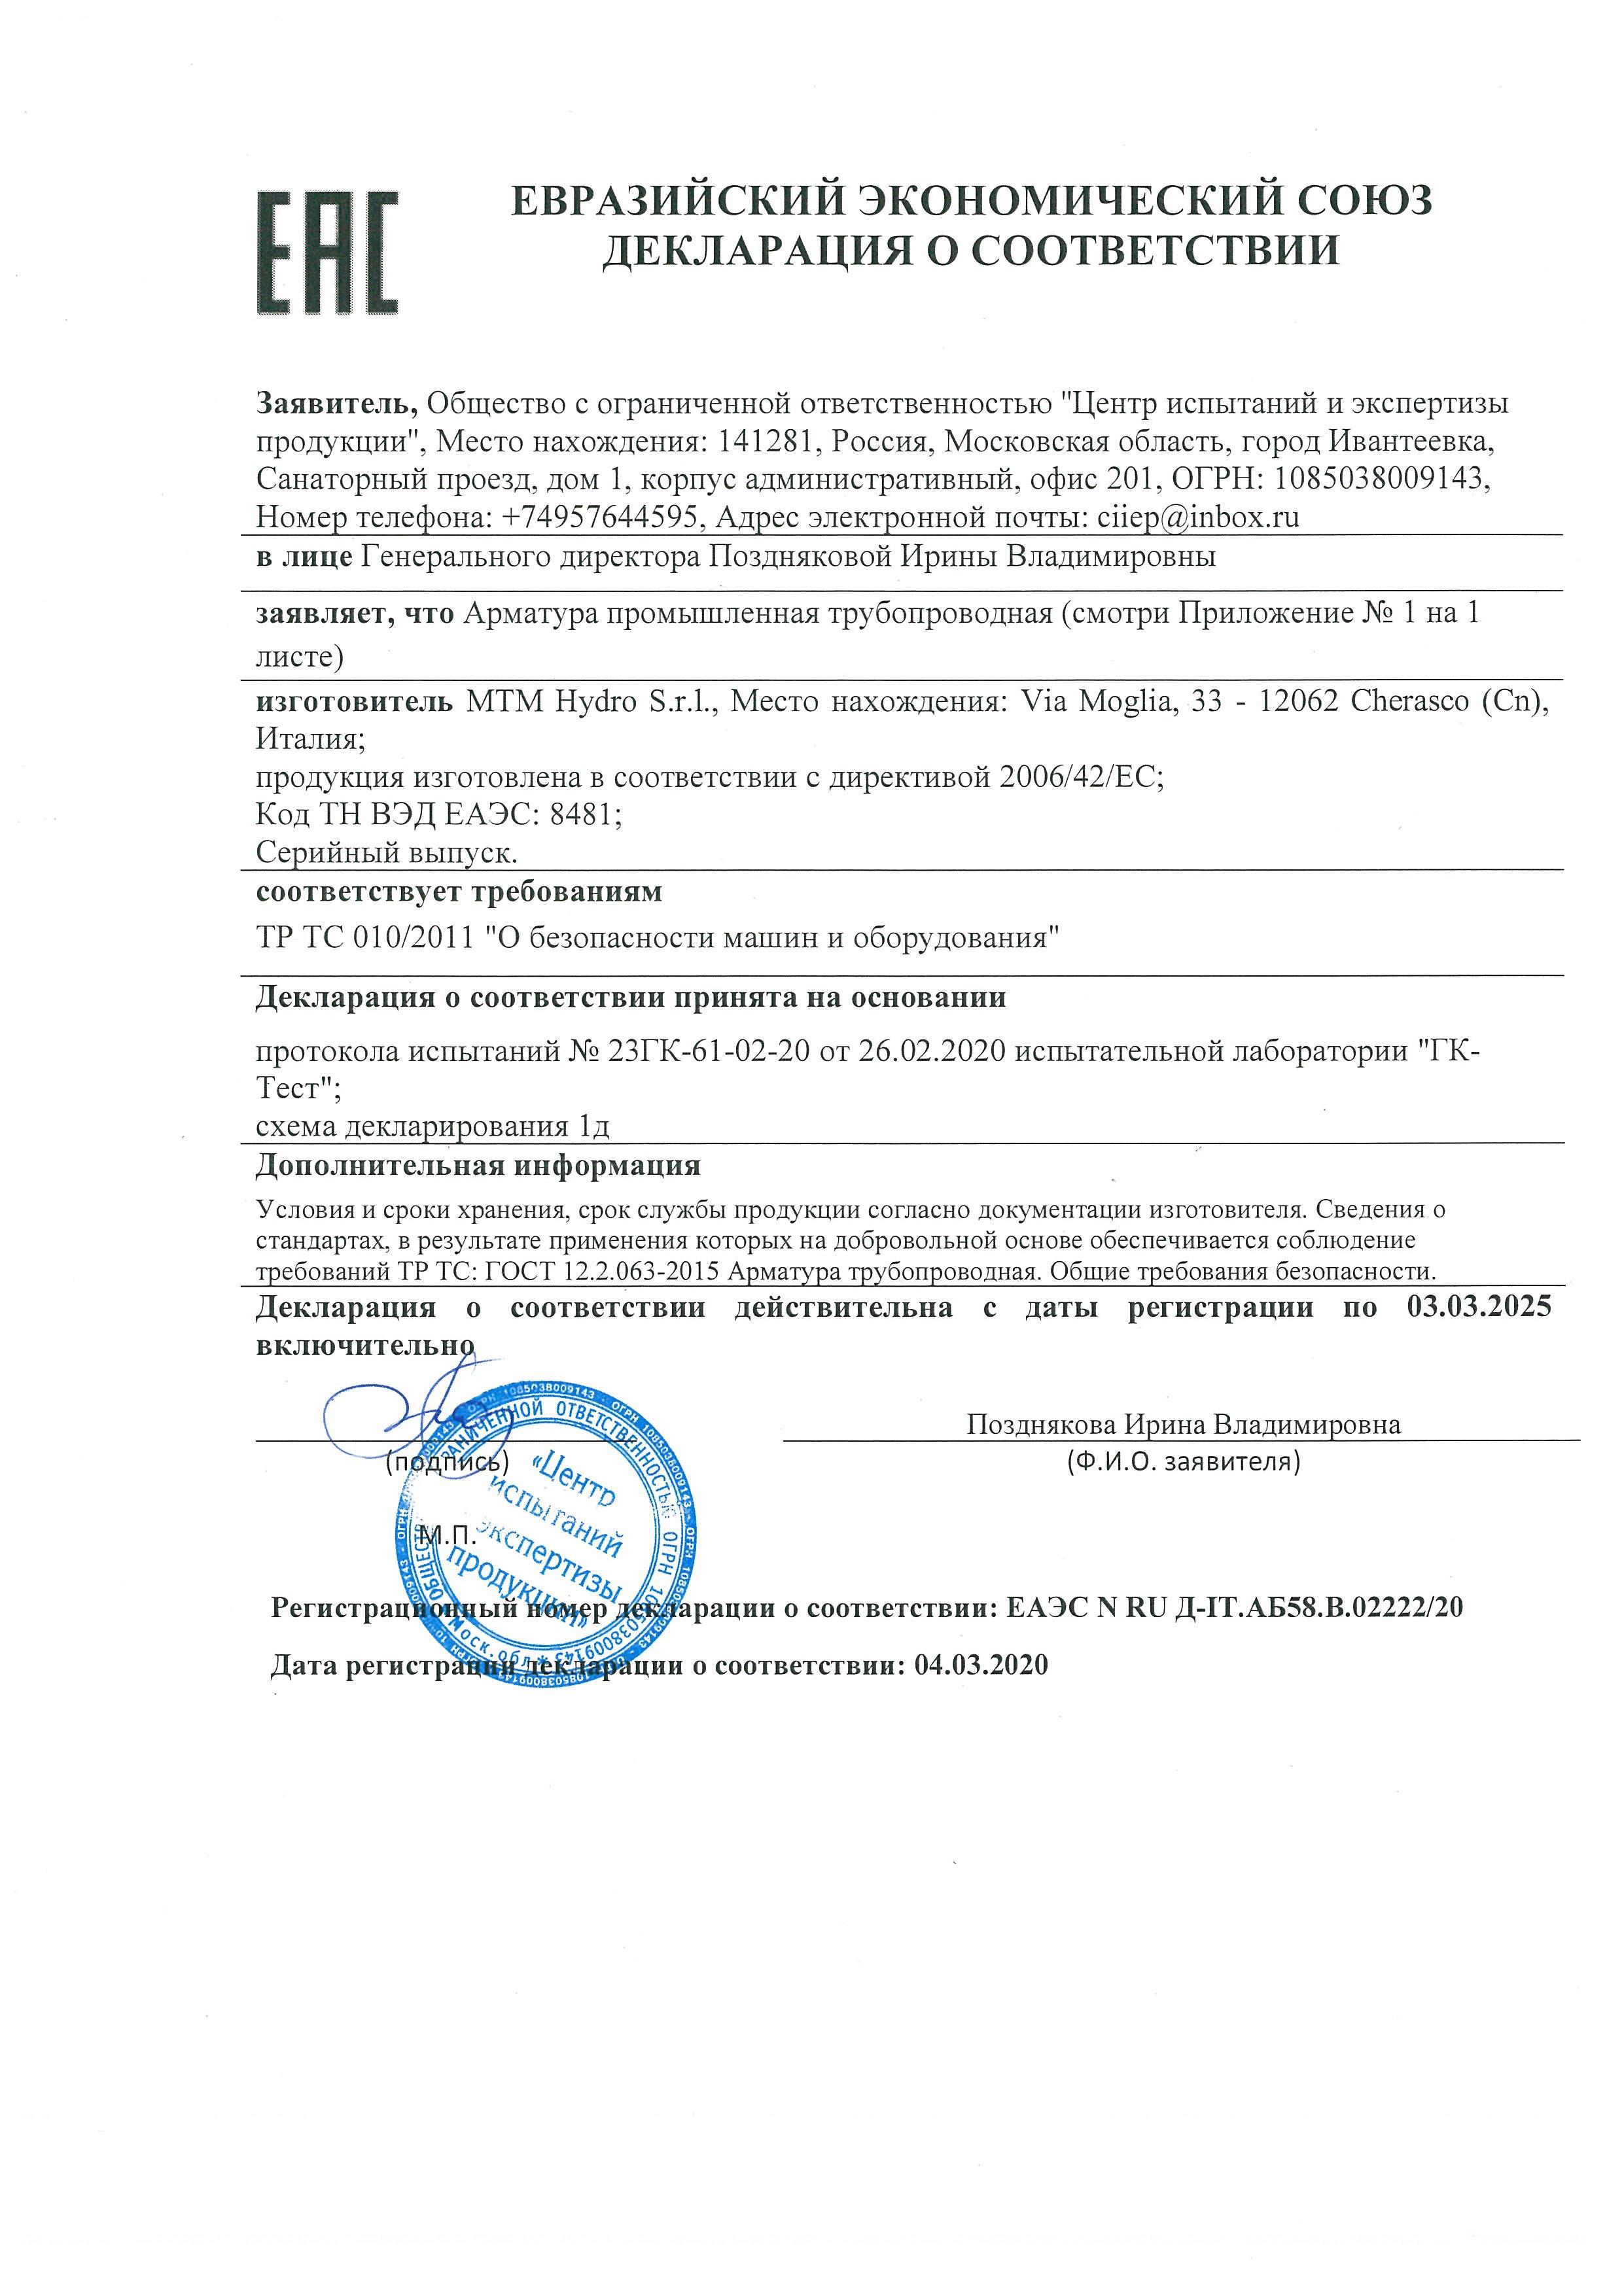 Евразийский экономический союз декларация о соответствии — Арматура промышленная трубопроводная